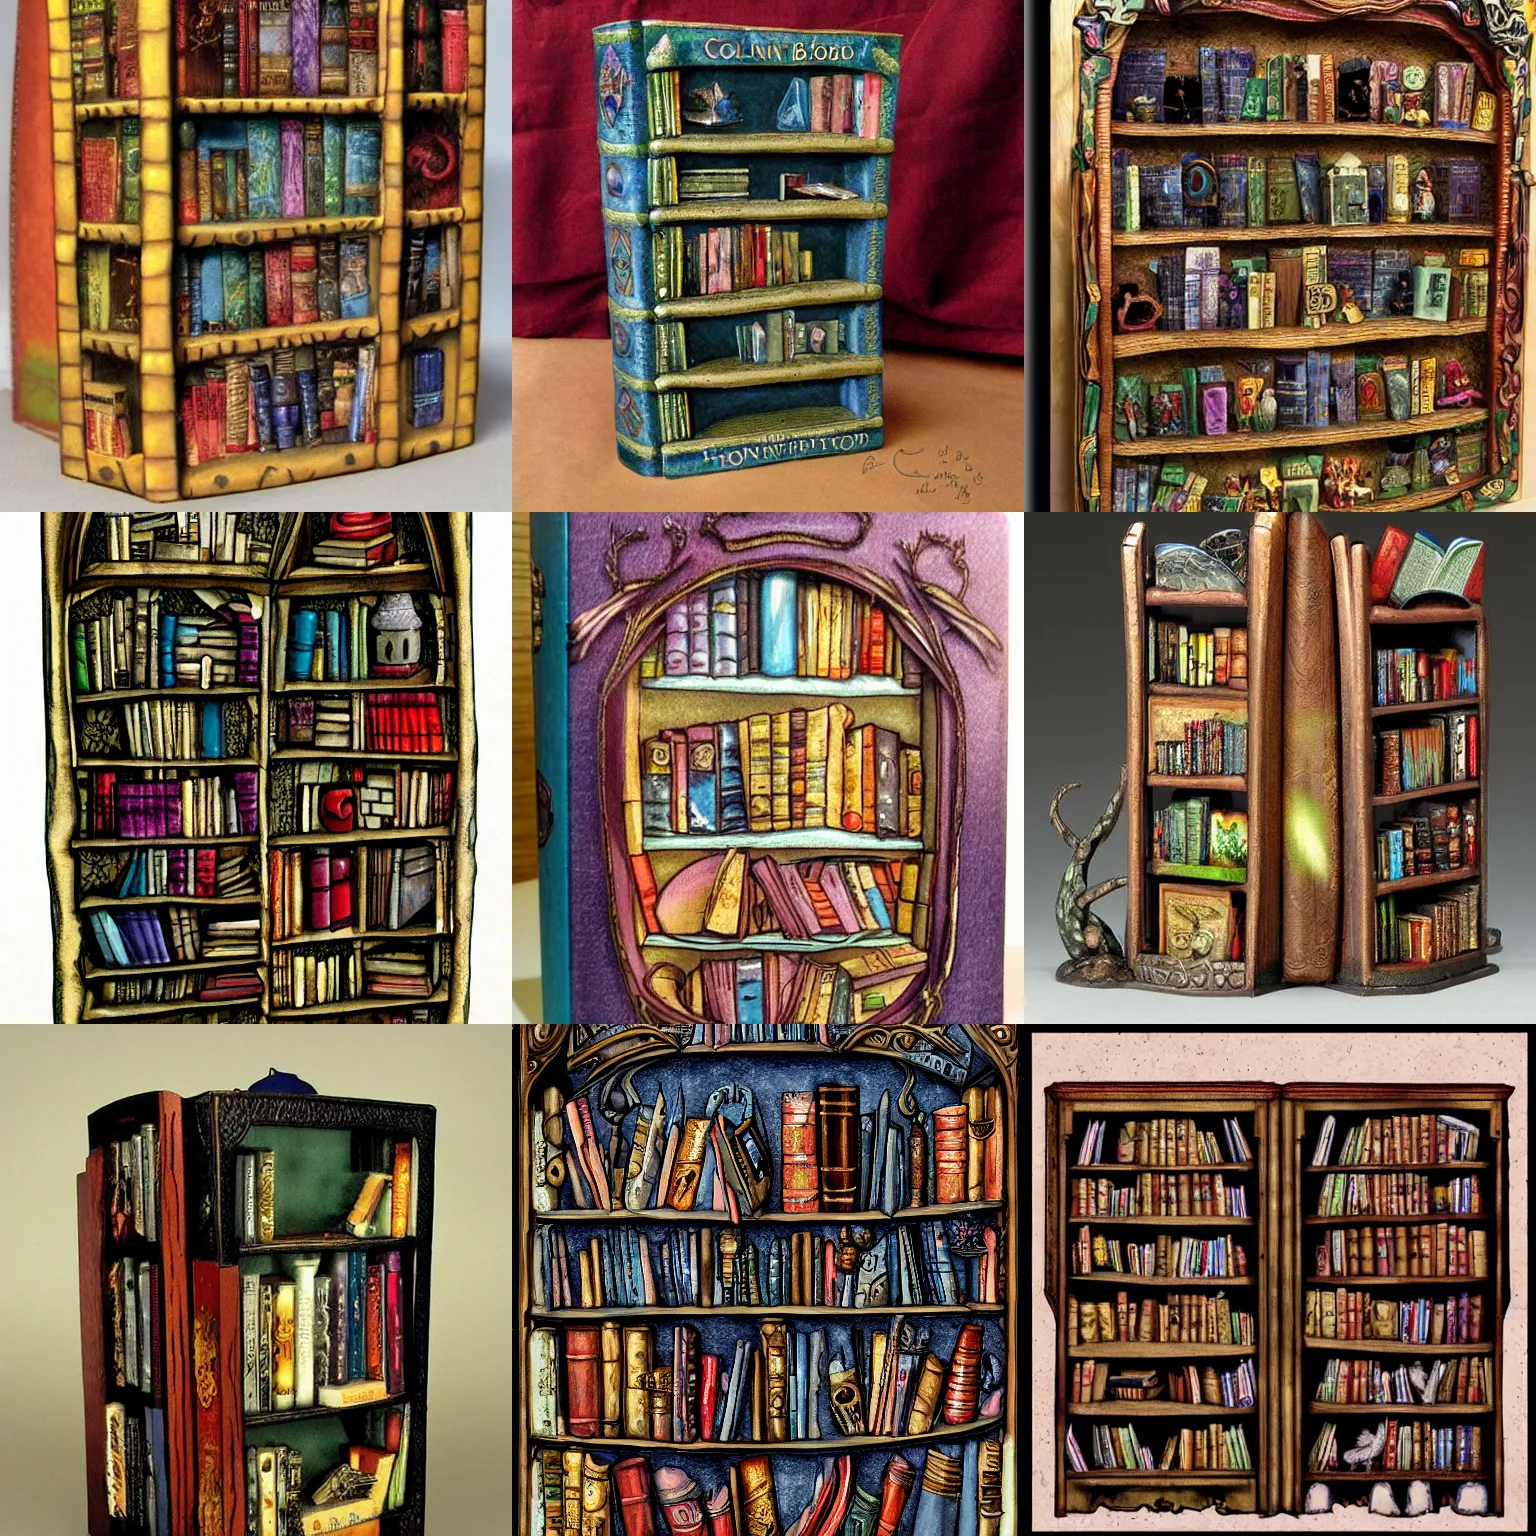 Enchanted bookshelf